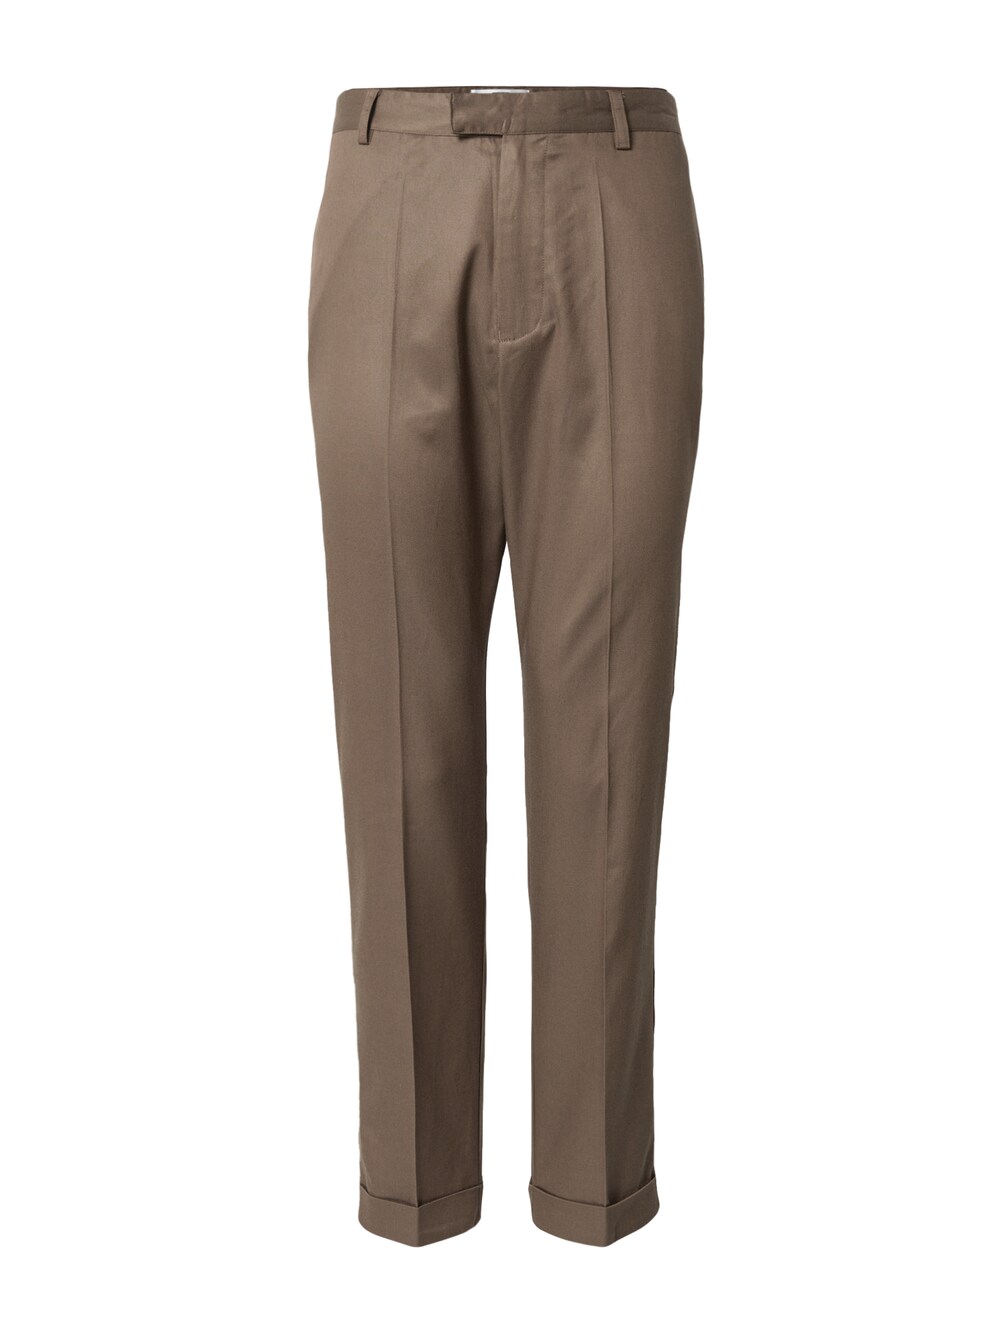 Обычные плиссированные брюки ABOUT YOU x Jaime Lorente Rico, коричневый